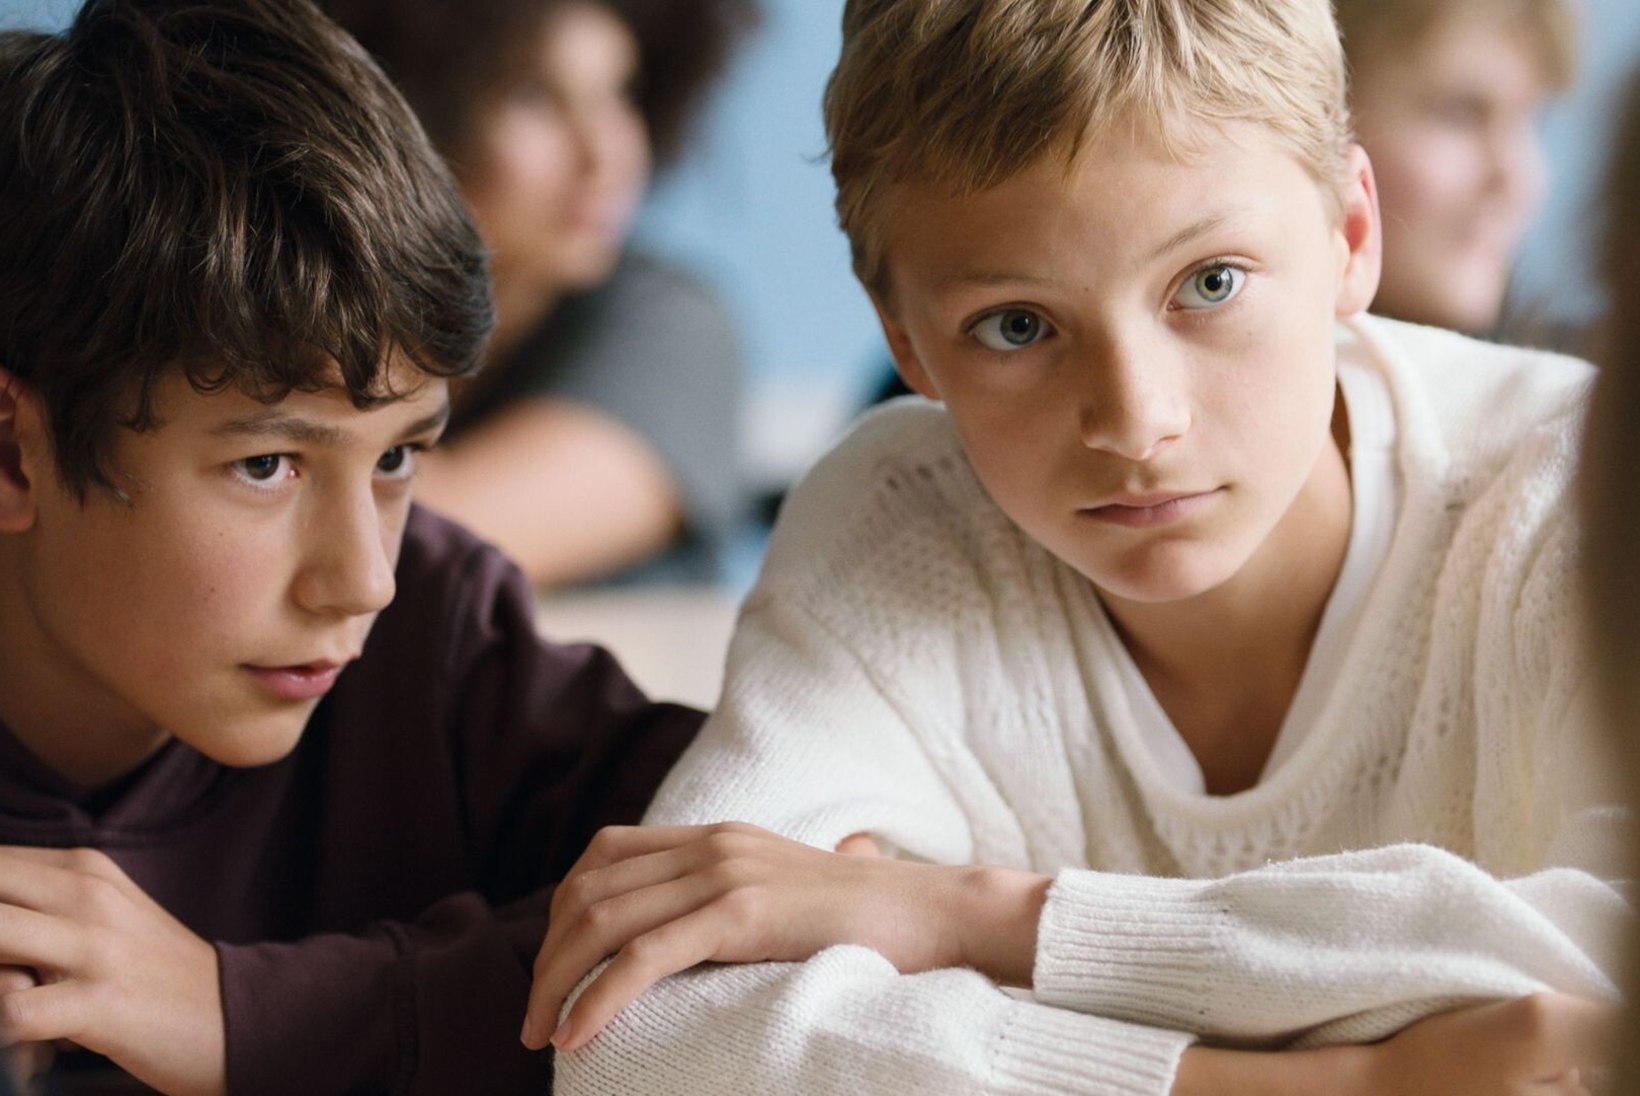 ARVUSTUS | Millal on poiste sõprus liiga lähedane? Draama „Lähestikku“ kritiseerib laste julmust ja aegunud soorolle